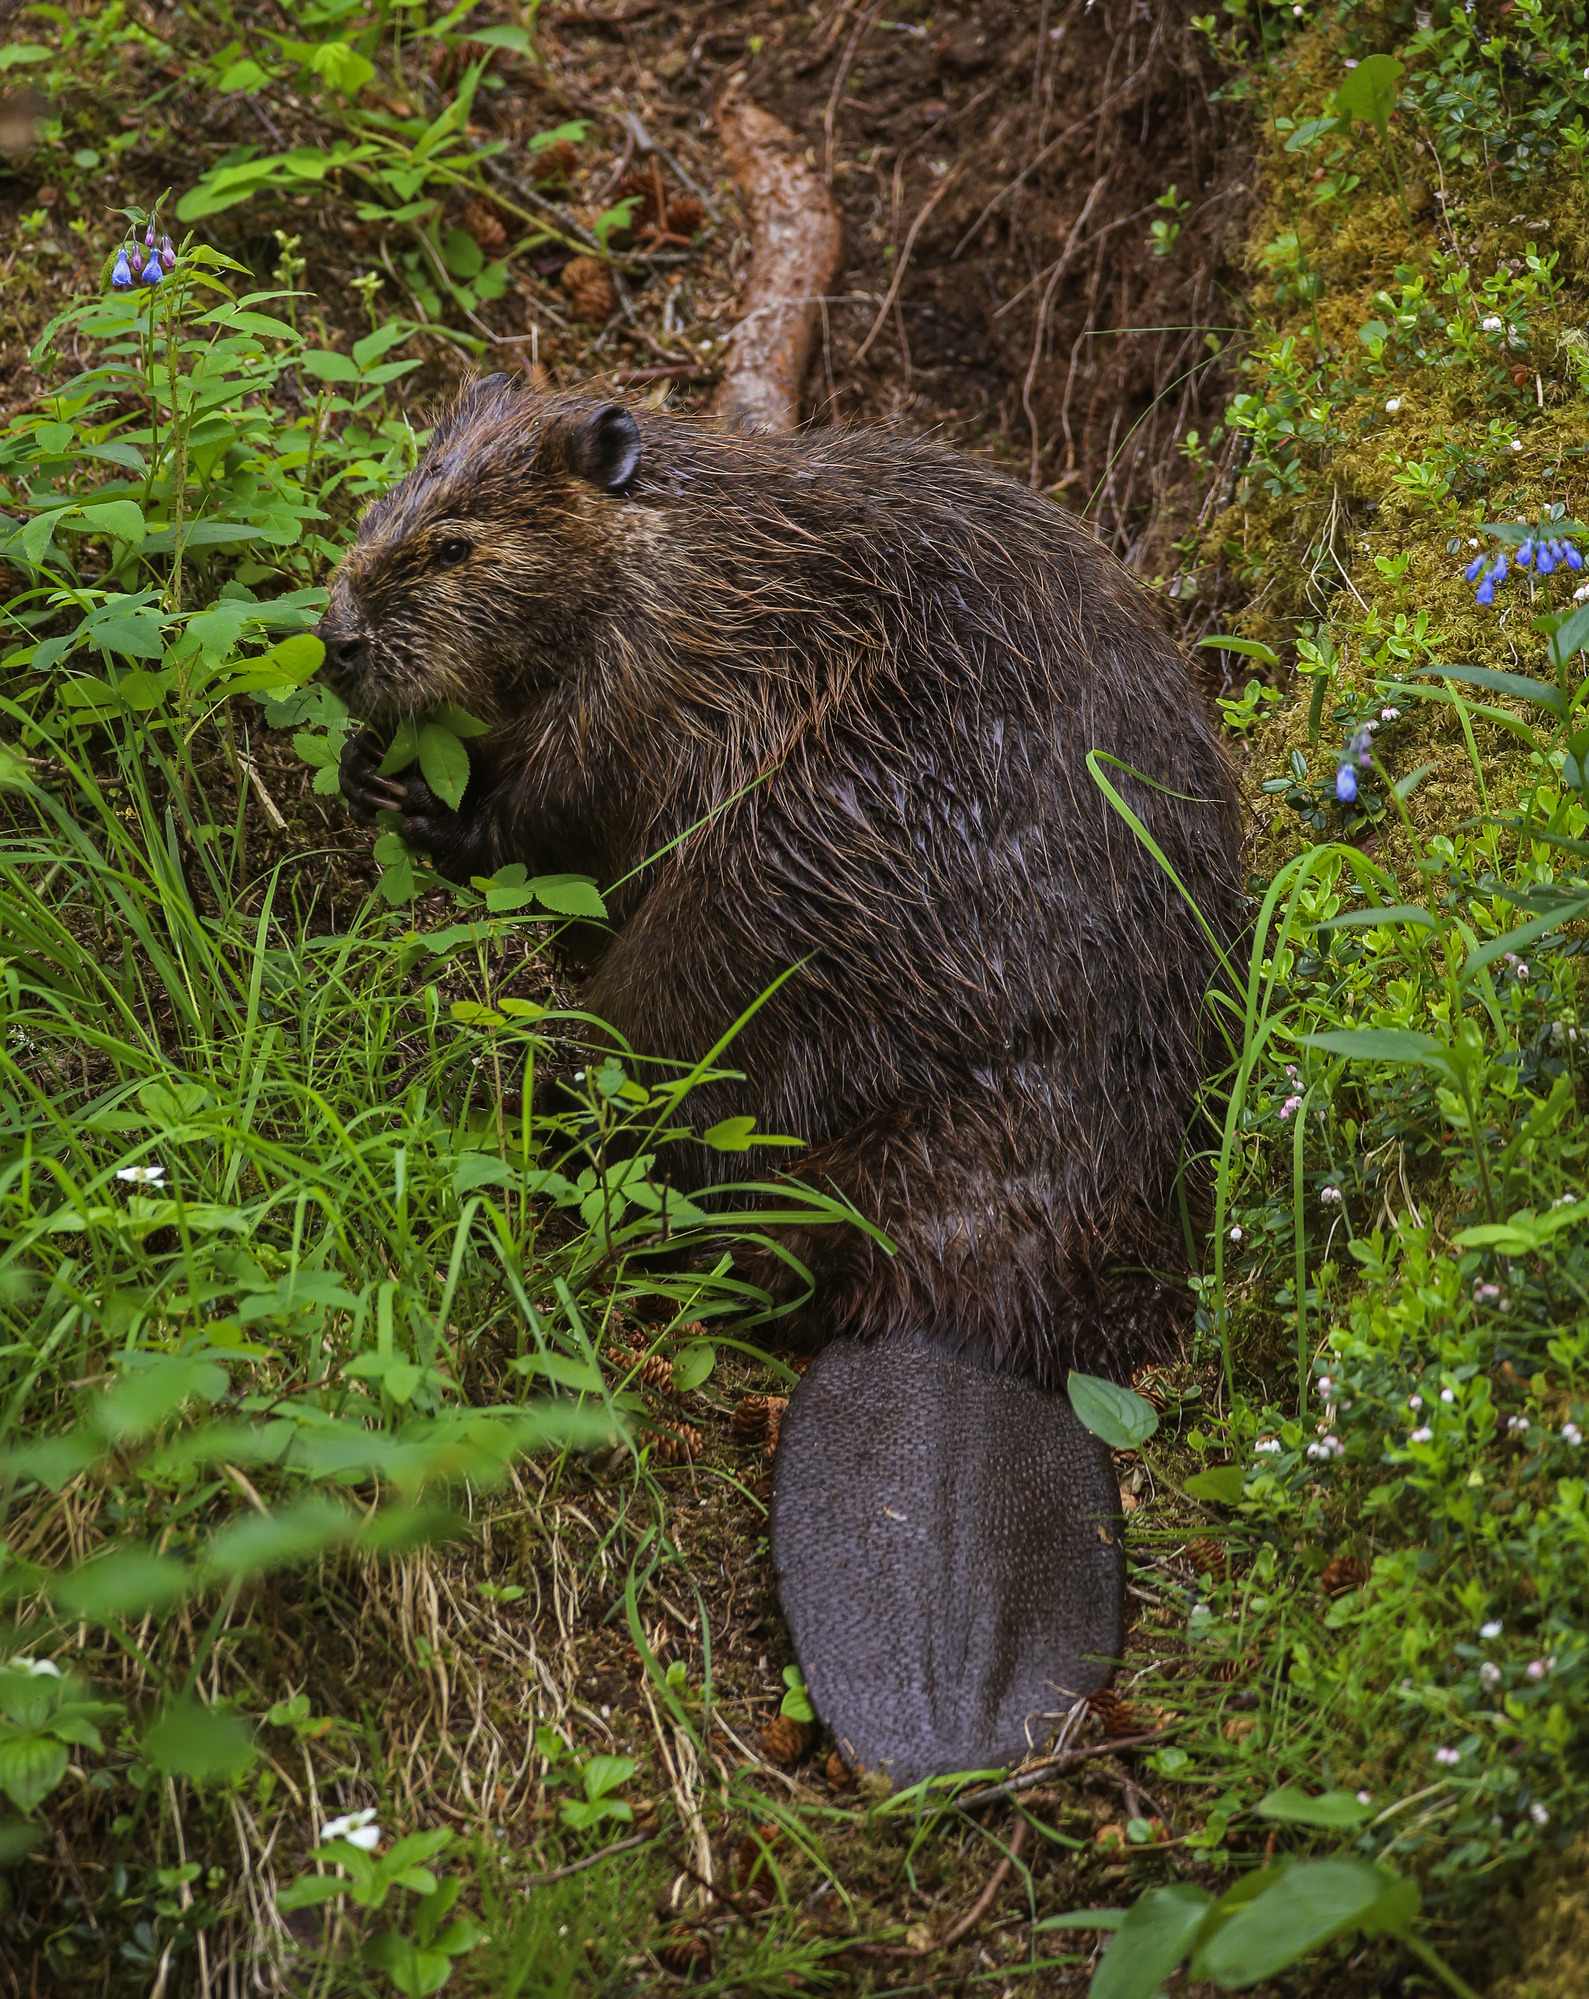 a beaver eating plants